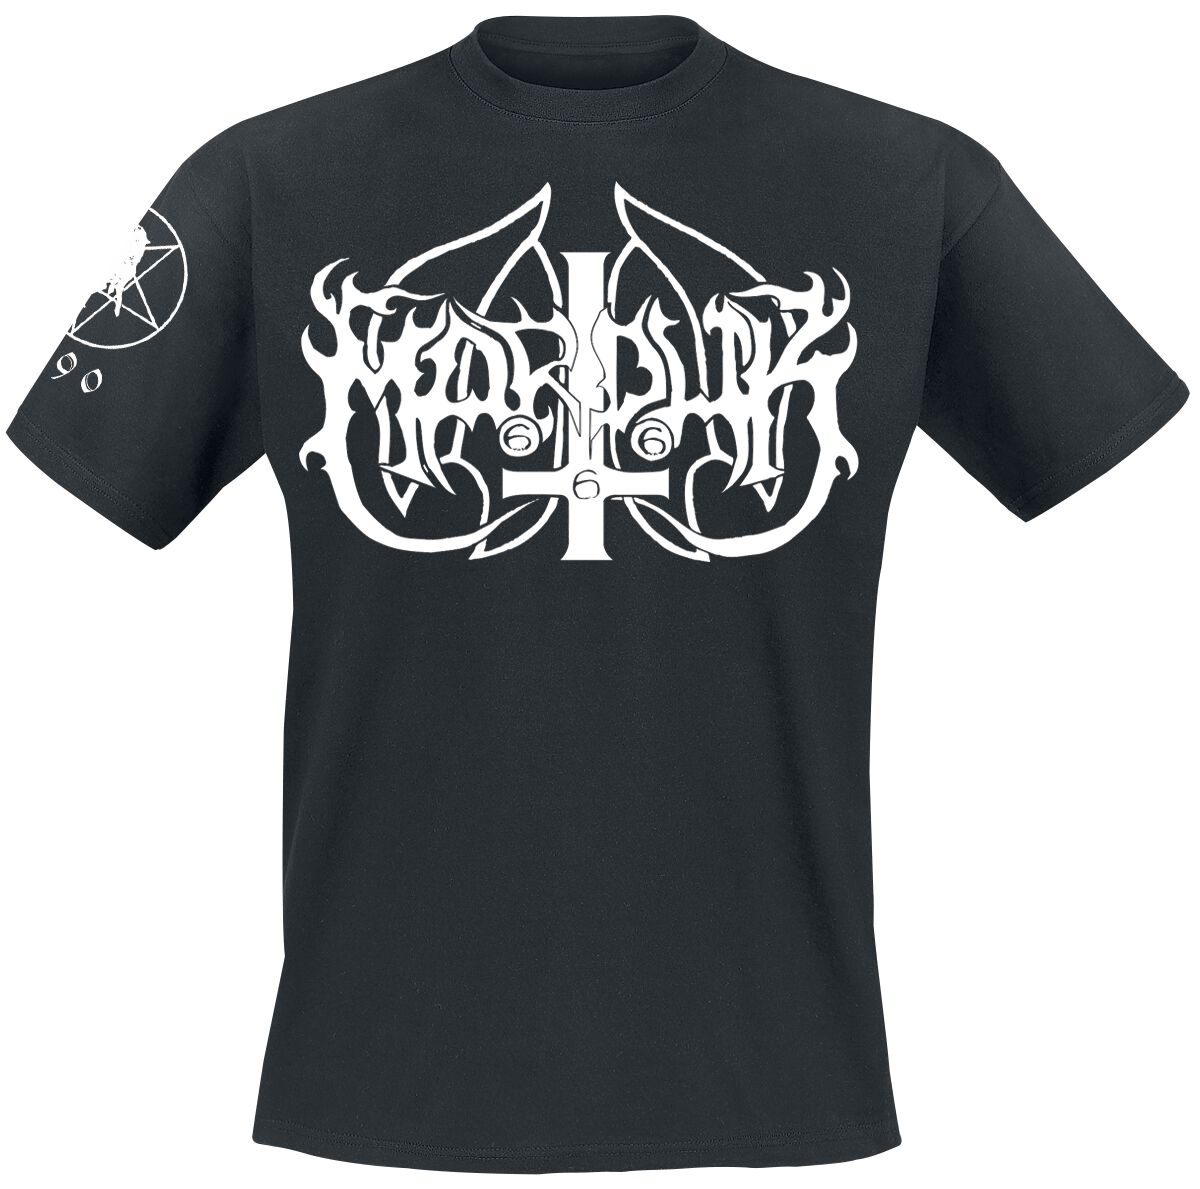 Marduk T-Shirt - Marduk Legion - L bis XXL - für Männer - Größe XXL - schwarz  - Lizenziertes Merchandise!